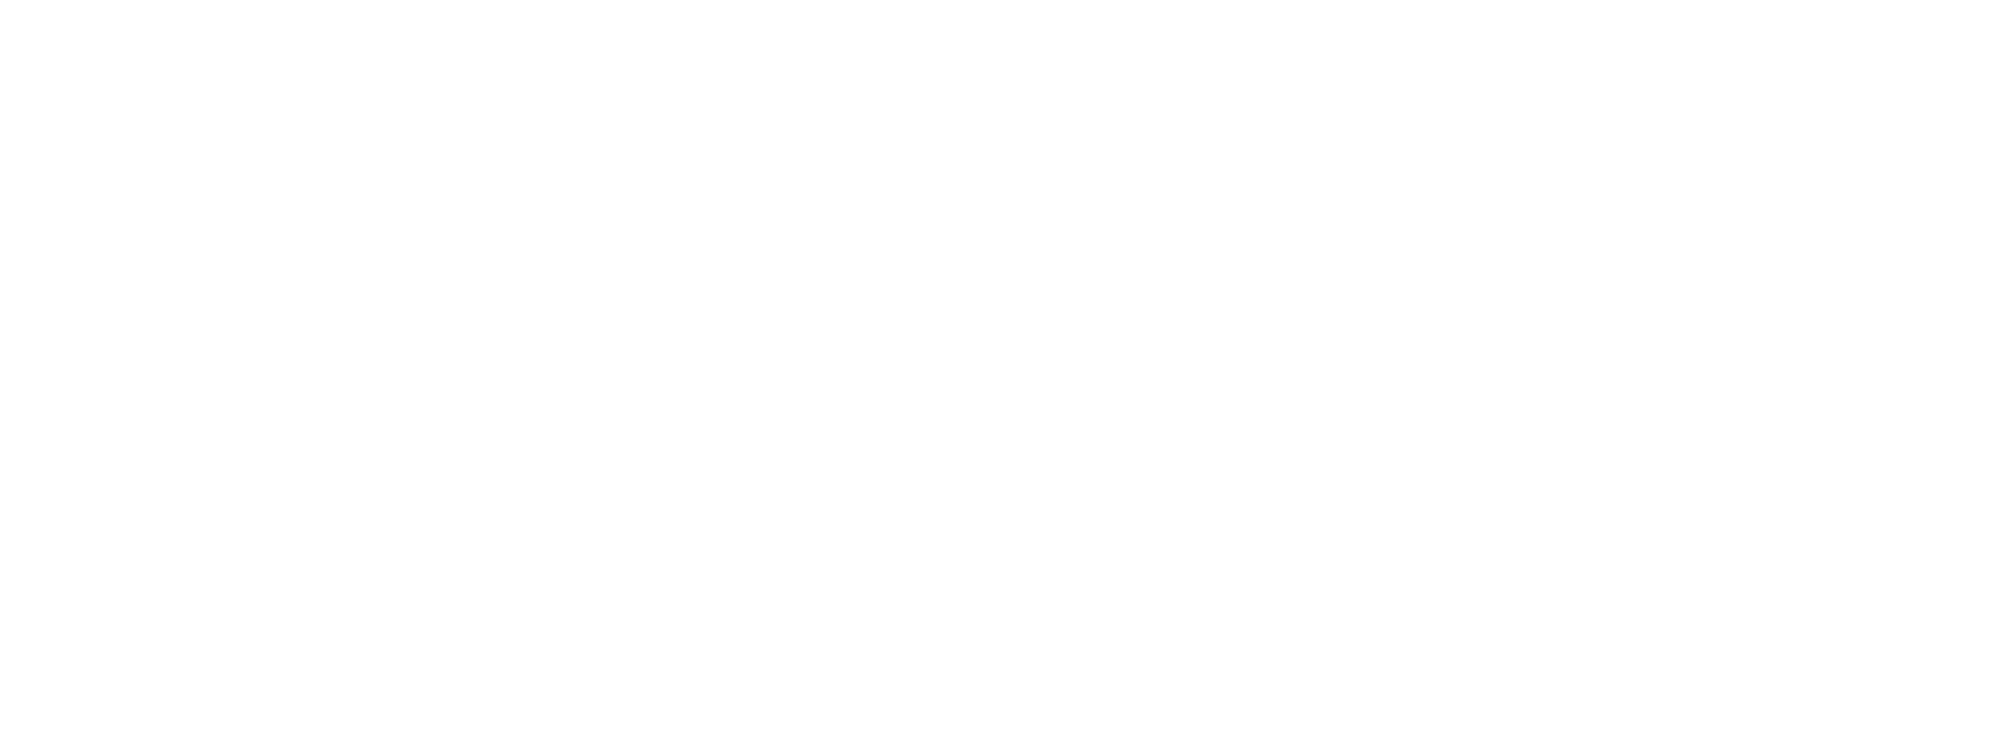 FAZI Client Area